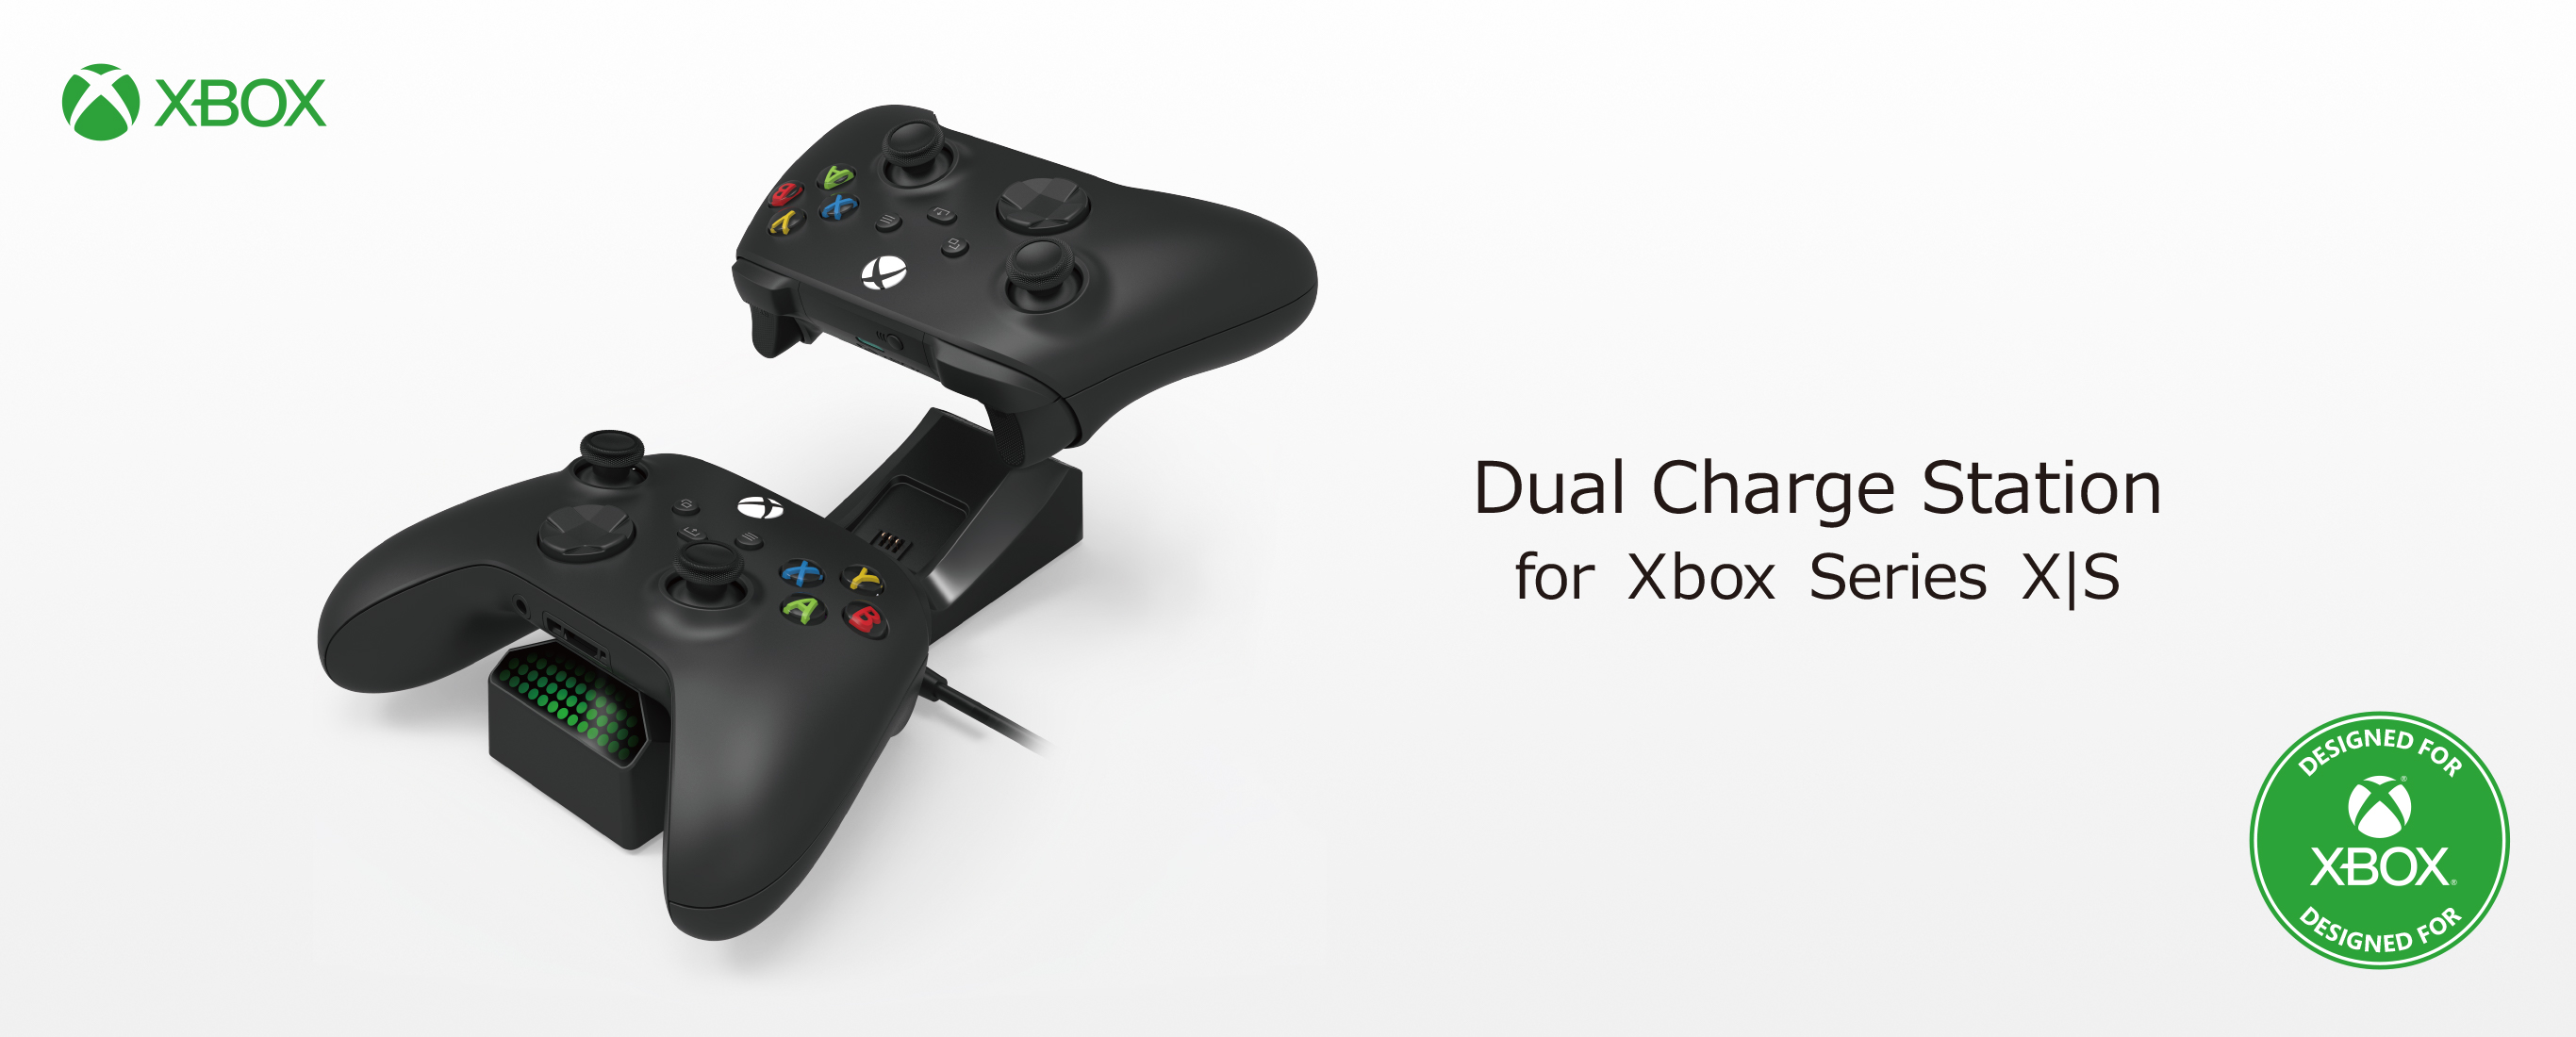 株式会社 HORI | Dual Charge Station for Xbox Series X|S